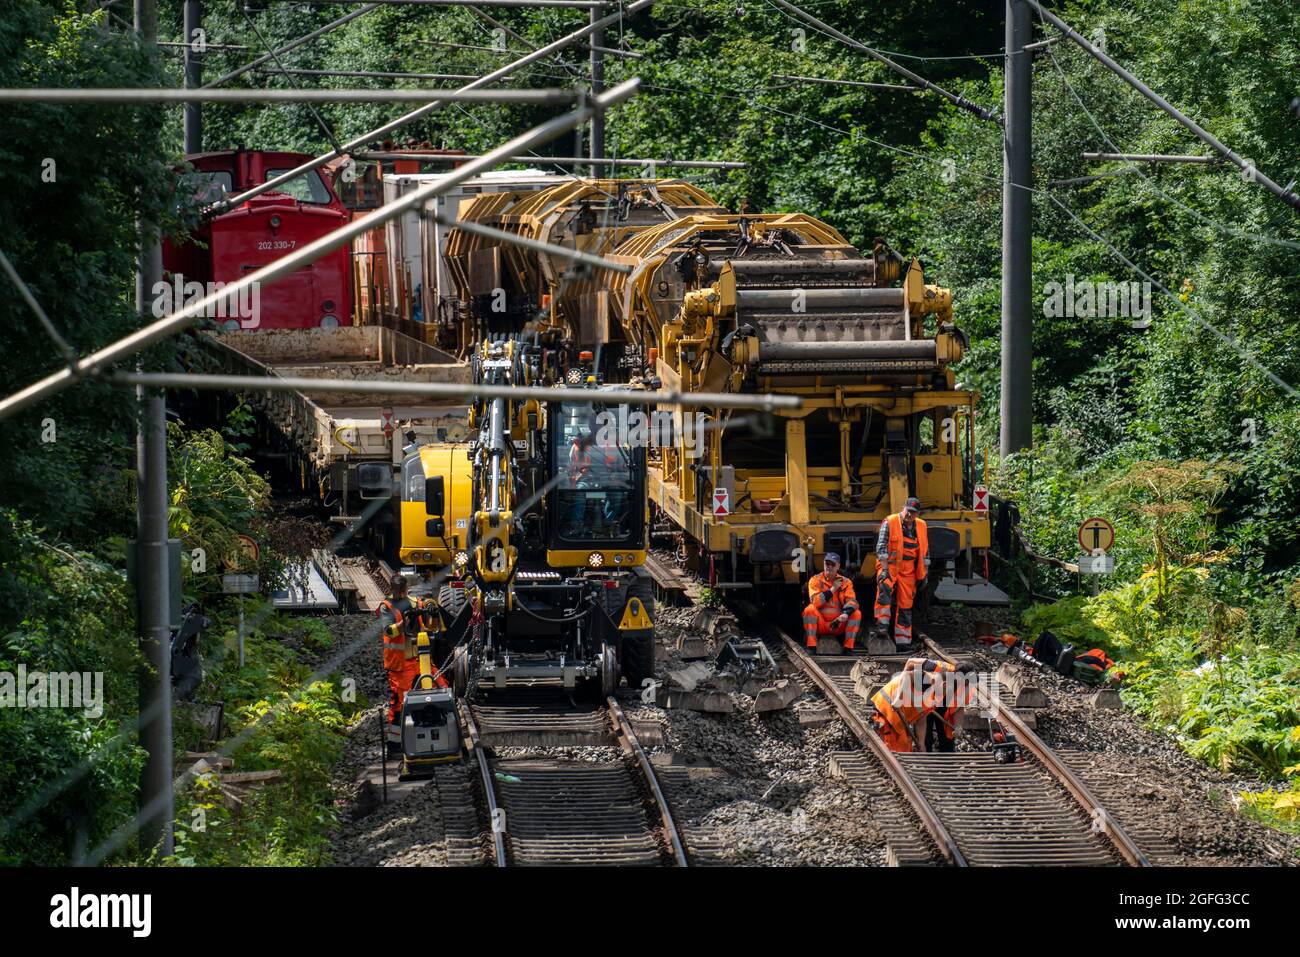 Lavori di riparazione sulle piste della S-Bahn linea 9, tra Essen e Wuppertal, vicino Essen-Kupferdreh, a causa dell'alluvione avvenuta nel luglio 2020, le piste erano segg Foto Stock